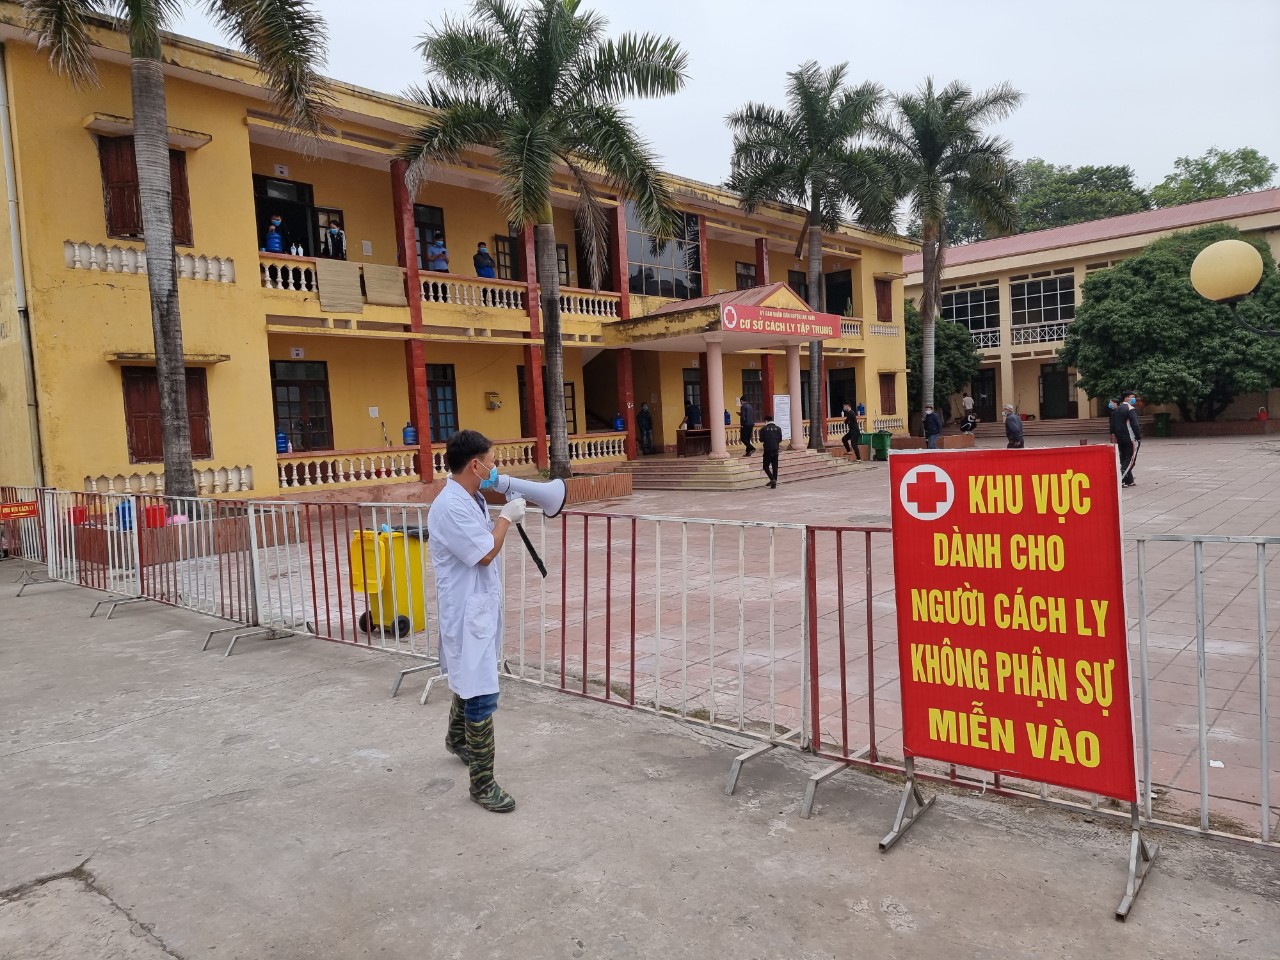 Bắc Giang ghi nhận 1 ca nhiễm SARS-CoV-2 - Ảnh 2.